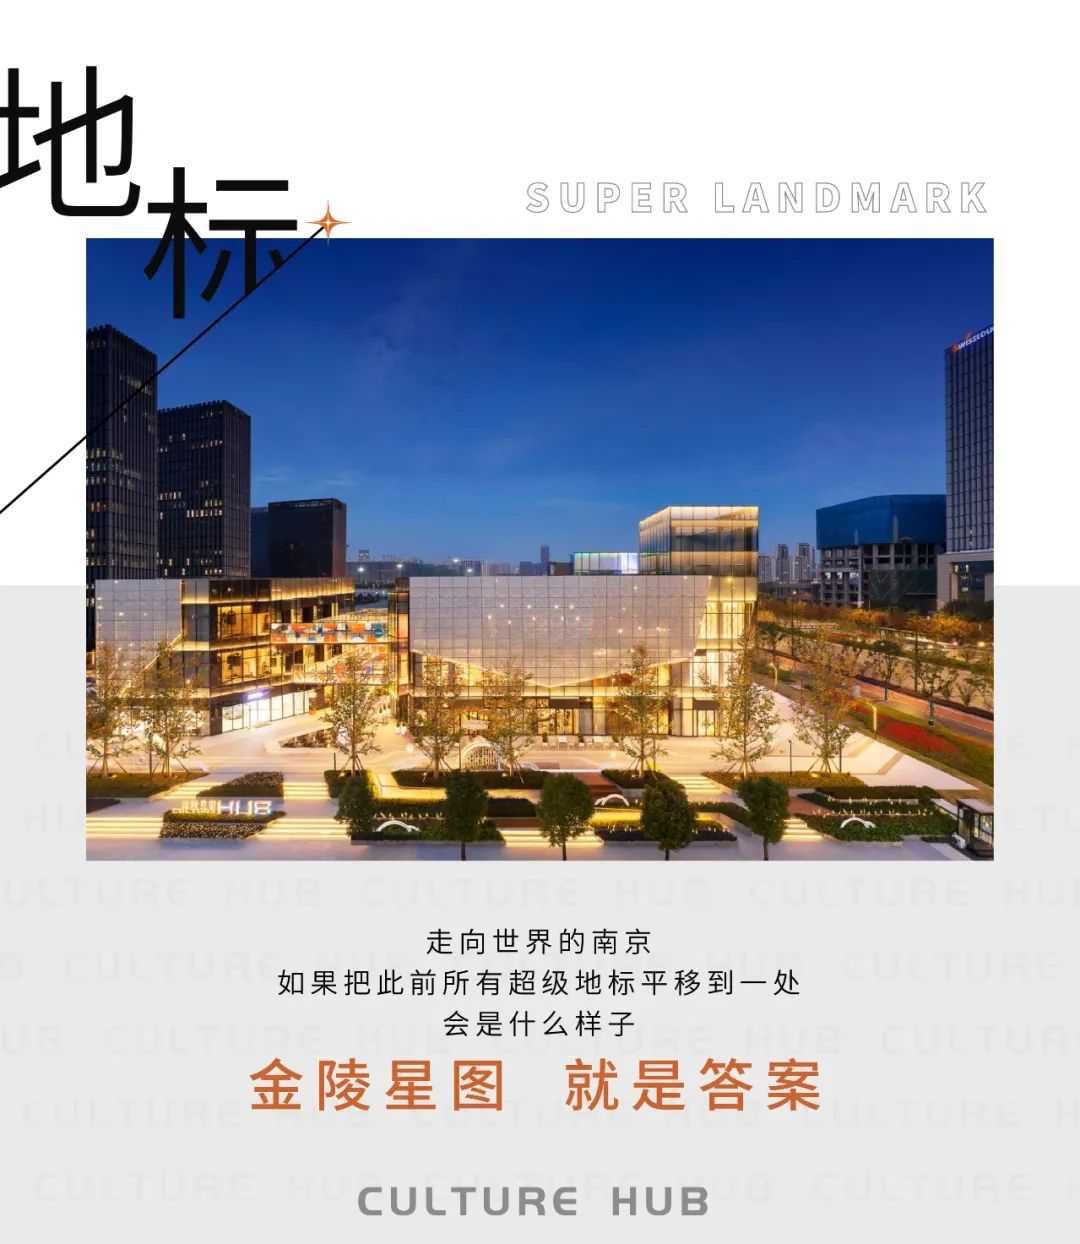 金陵星图  一次超级资源的镜像浓缩 一处代言南京的封面地标_中国网地产